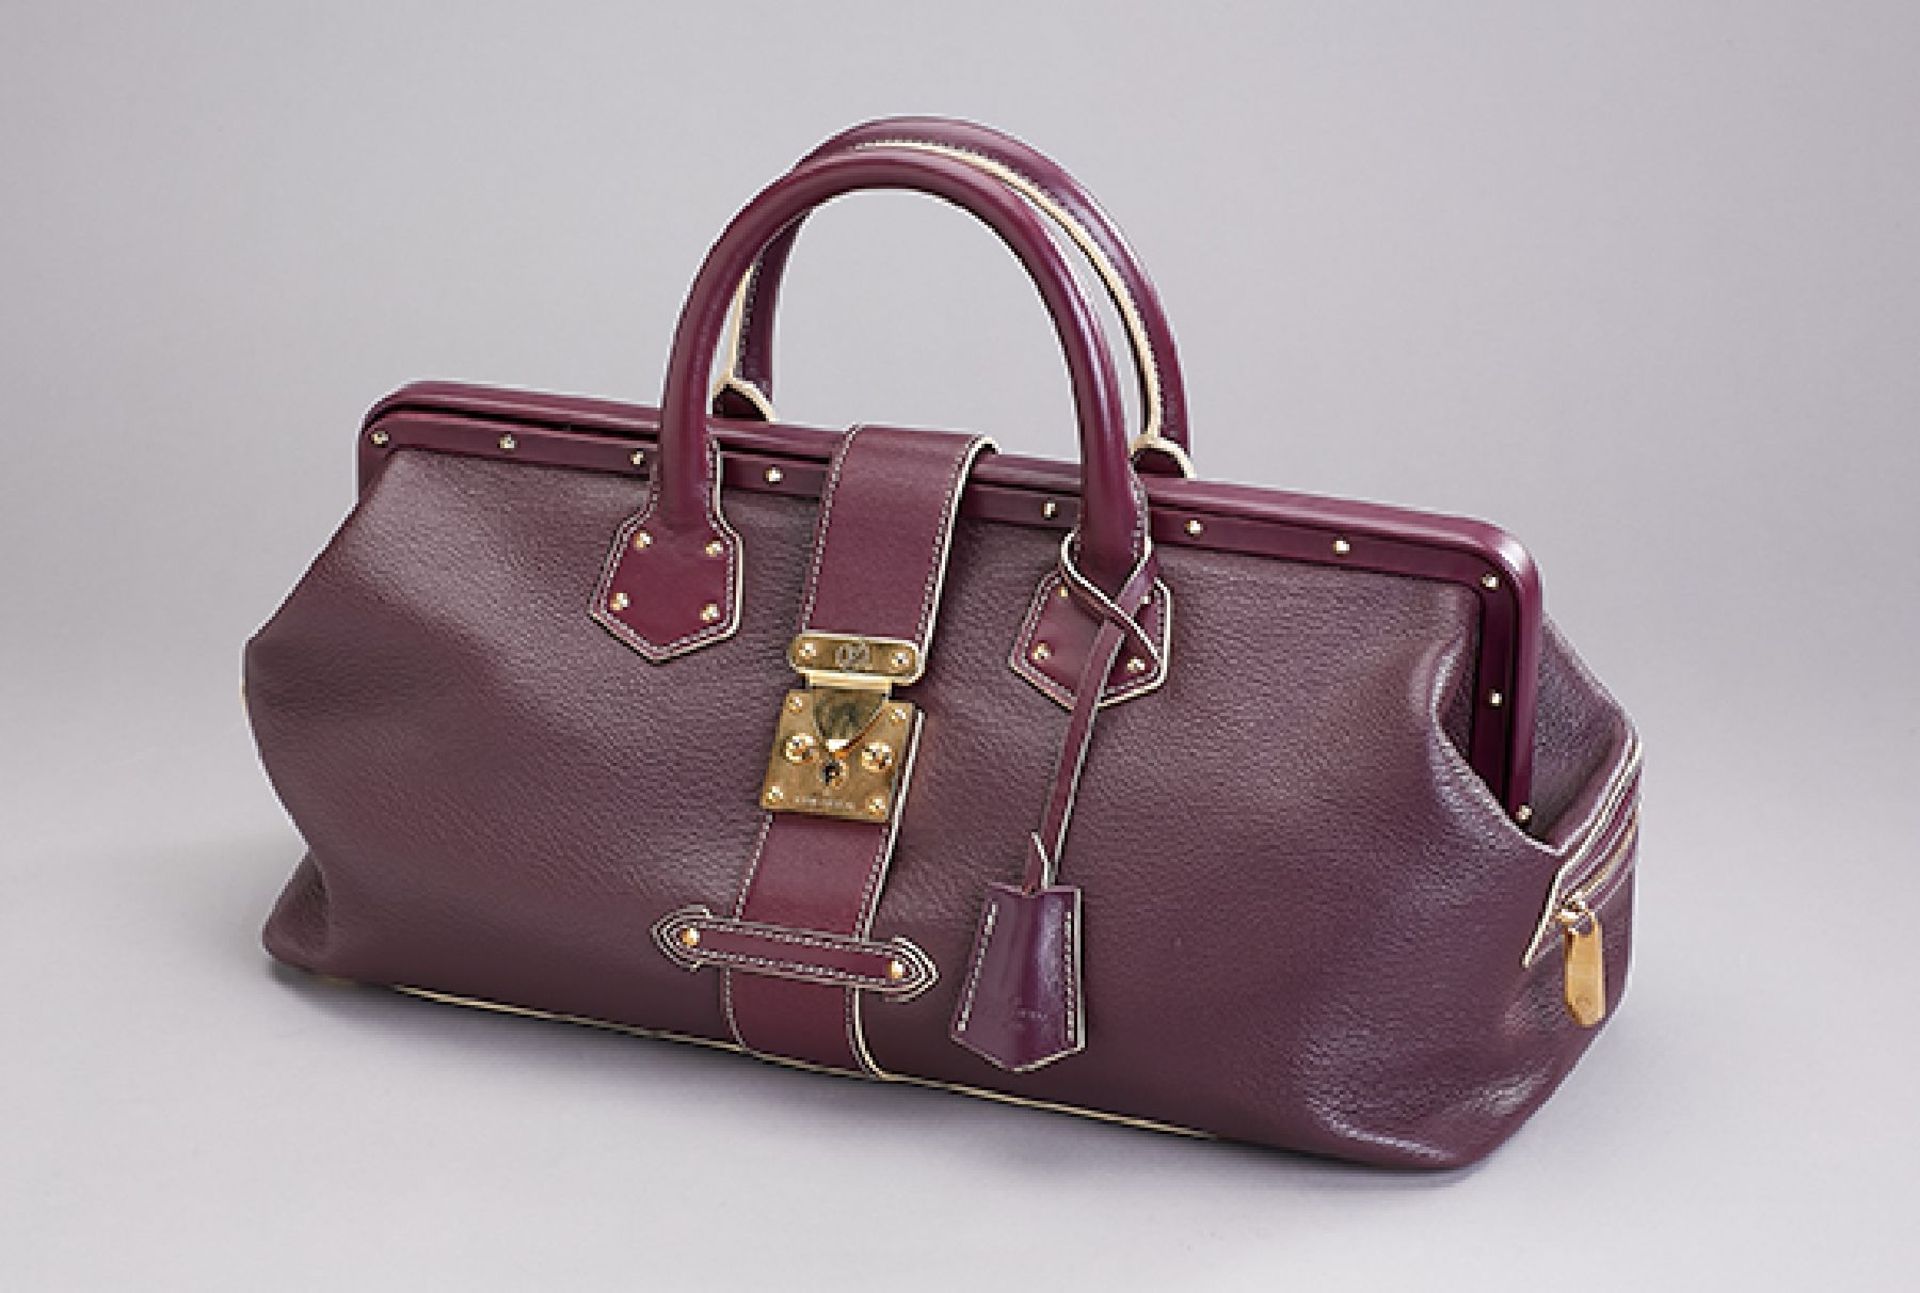 LOUIS VUITTON Handtasche L'Ingenieux, Grand Modell, pflaumenfarbenes Leder, goldfarb. Beschläge,